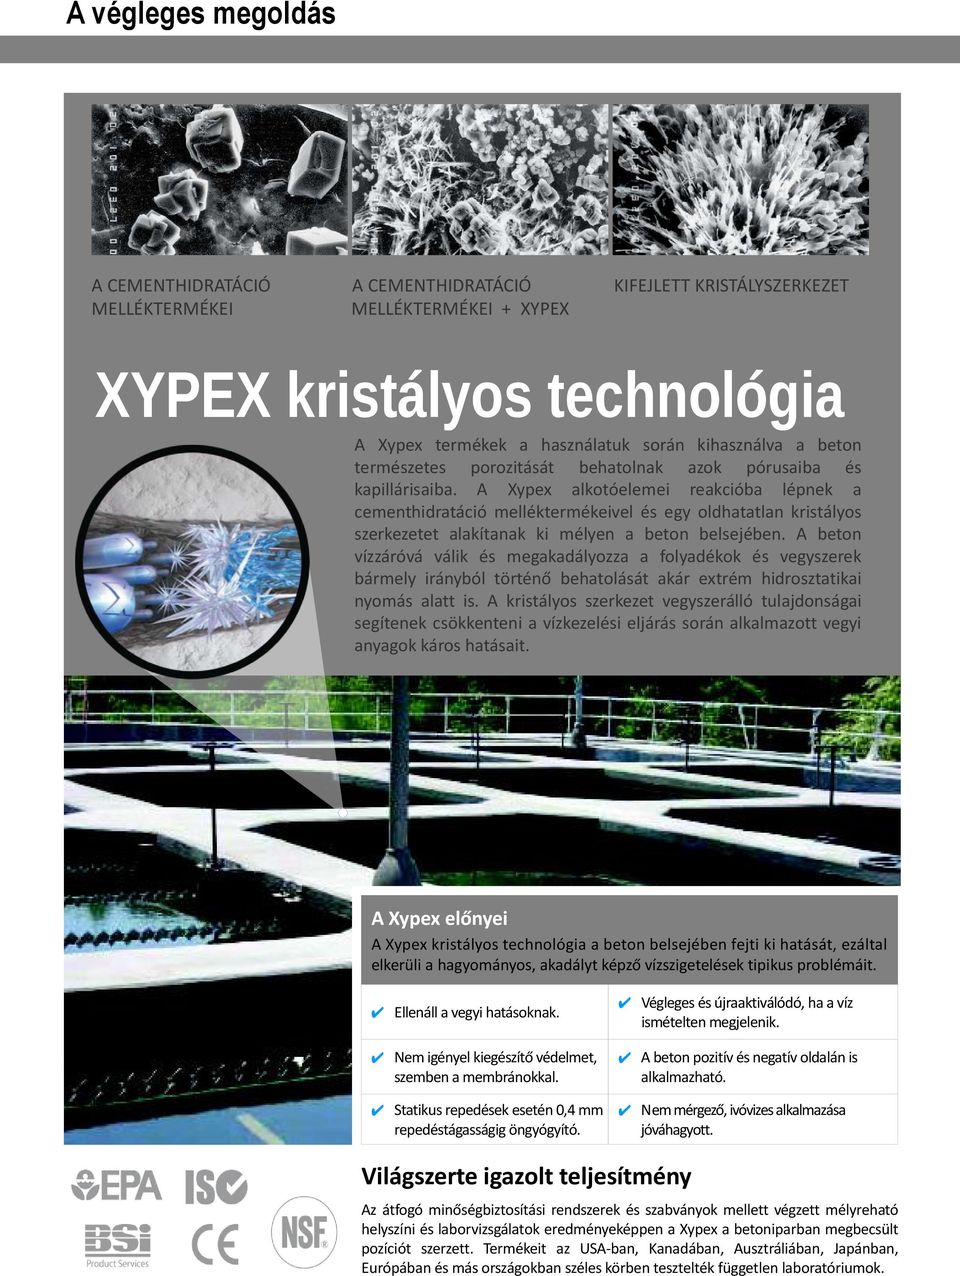 A Xypex alkotóelemei reakcióba lépnek a cementhidratáció melléktermékeivel és egy oldhatatlan kristályos szerkezetet alakítanak ki mélyen a beton belsejében.